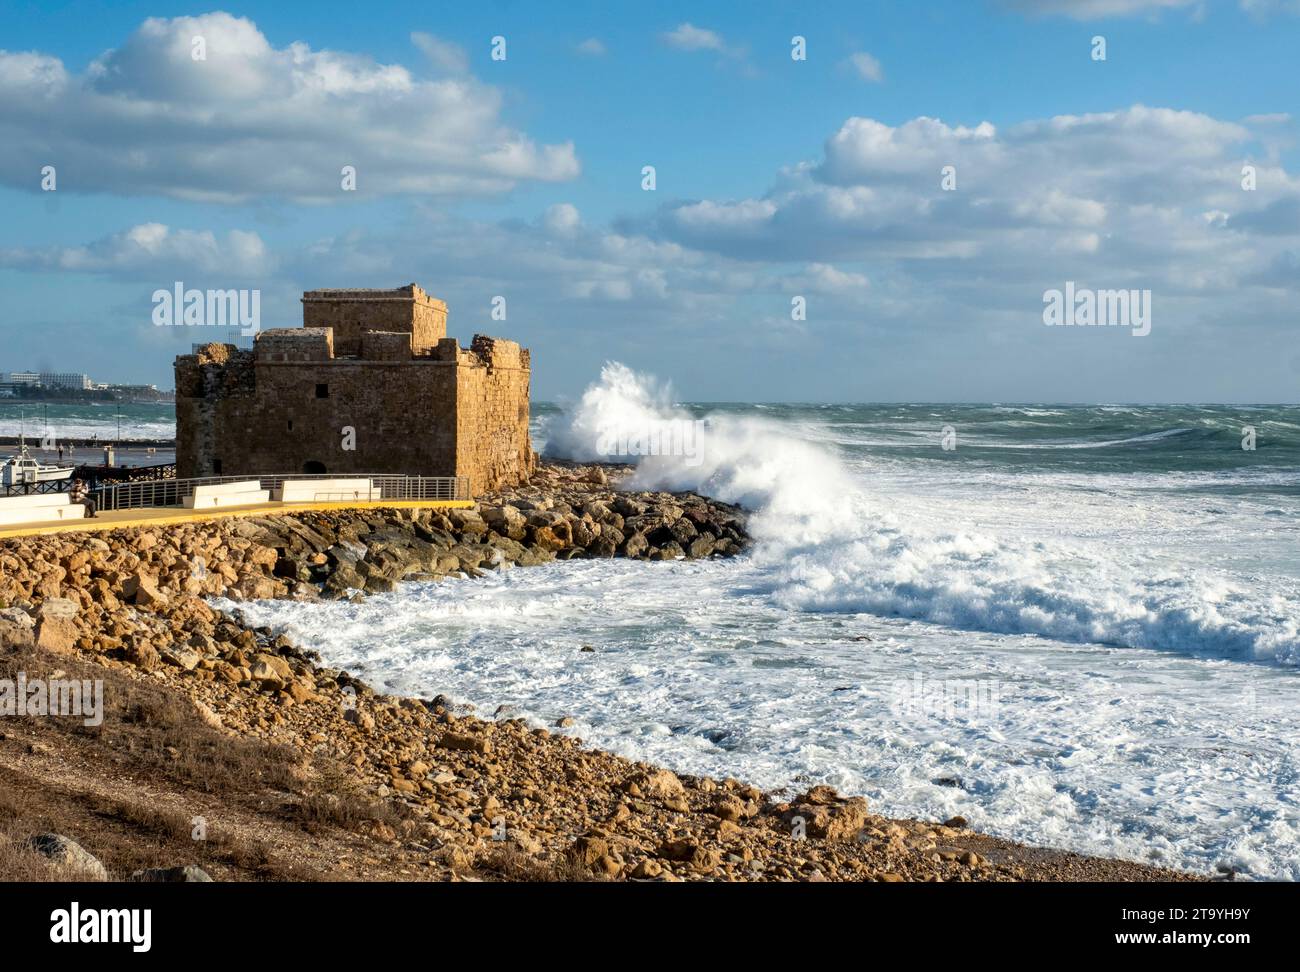 Les mers agitées frappent les rochers du château de Paphos, à Paphos, Chypre. Banque D'Images